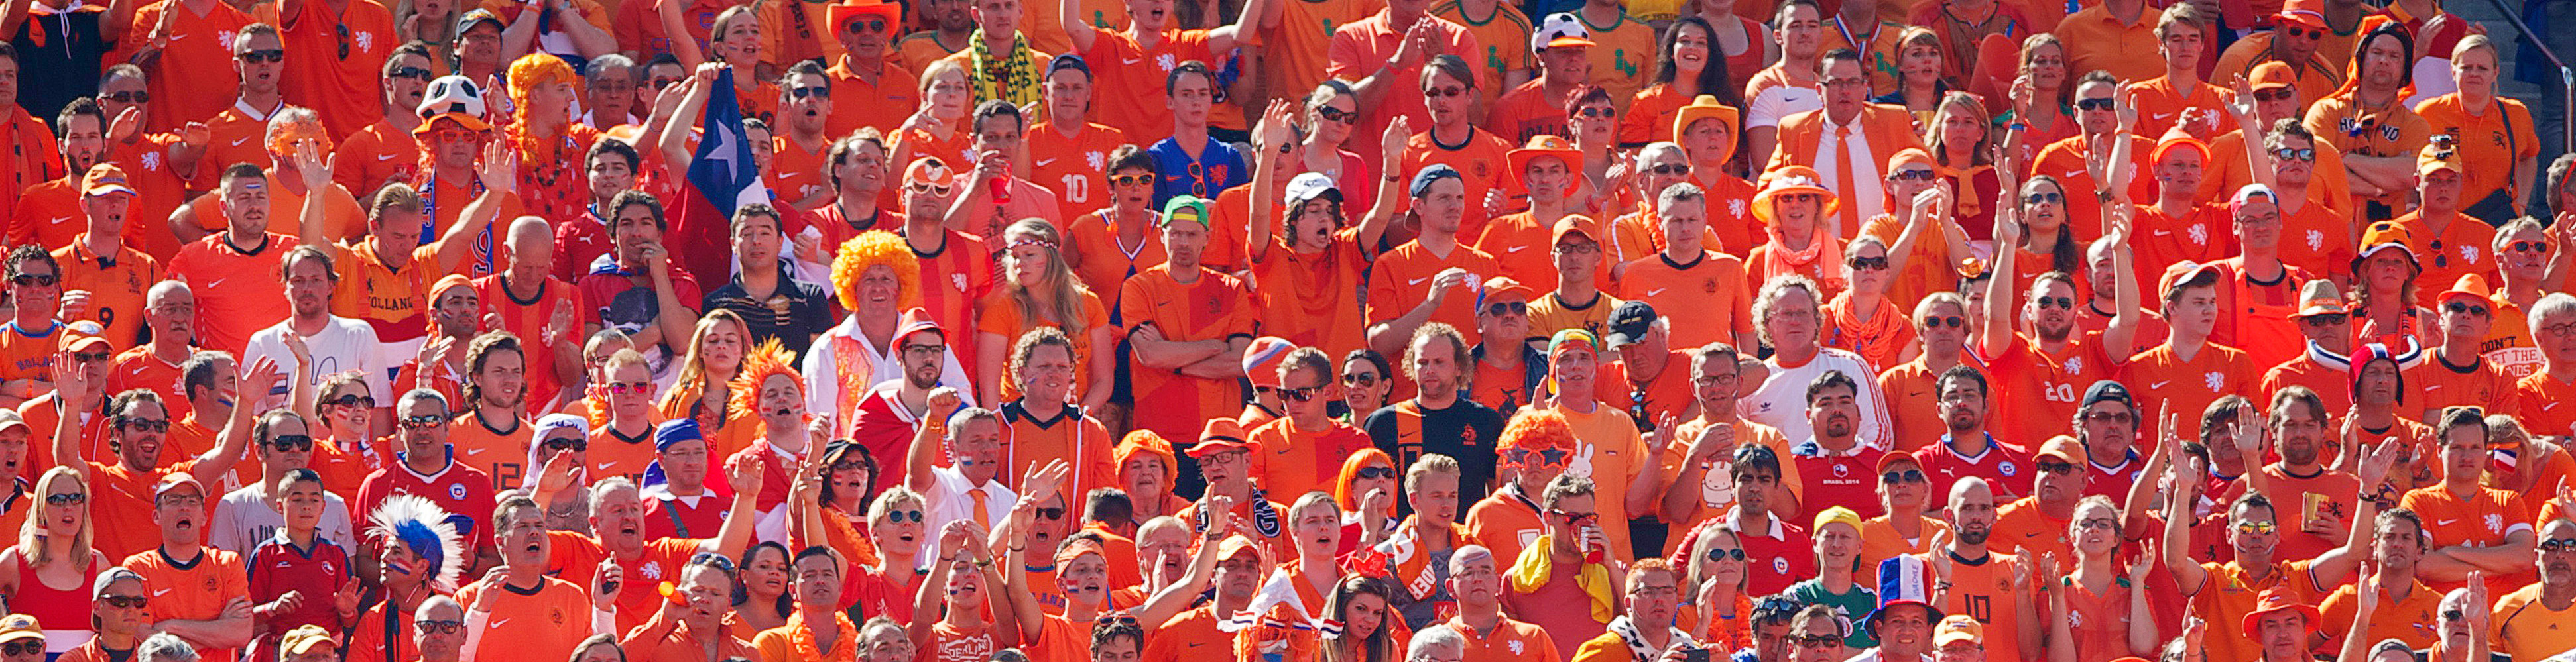 Voor de wedstrijd Nederland - Costa Rica wordt er wederom een Oranjeplein georganiseerd.